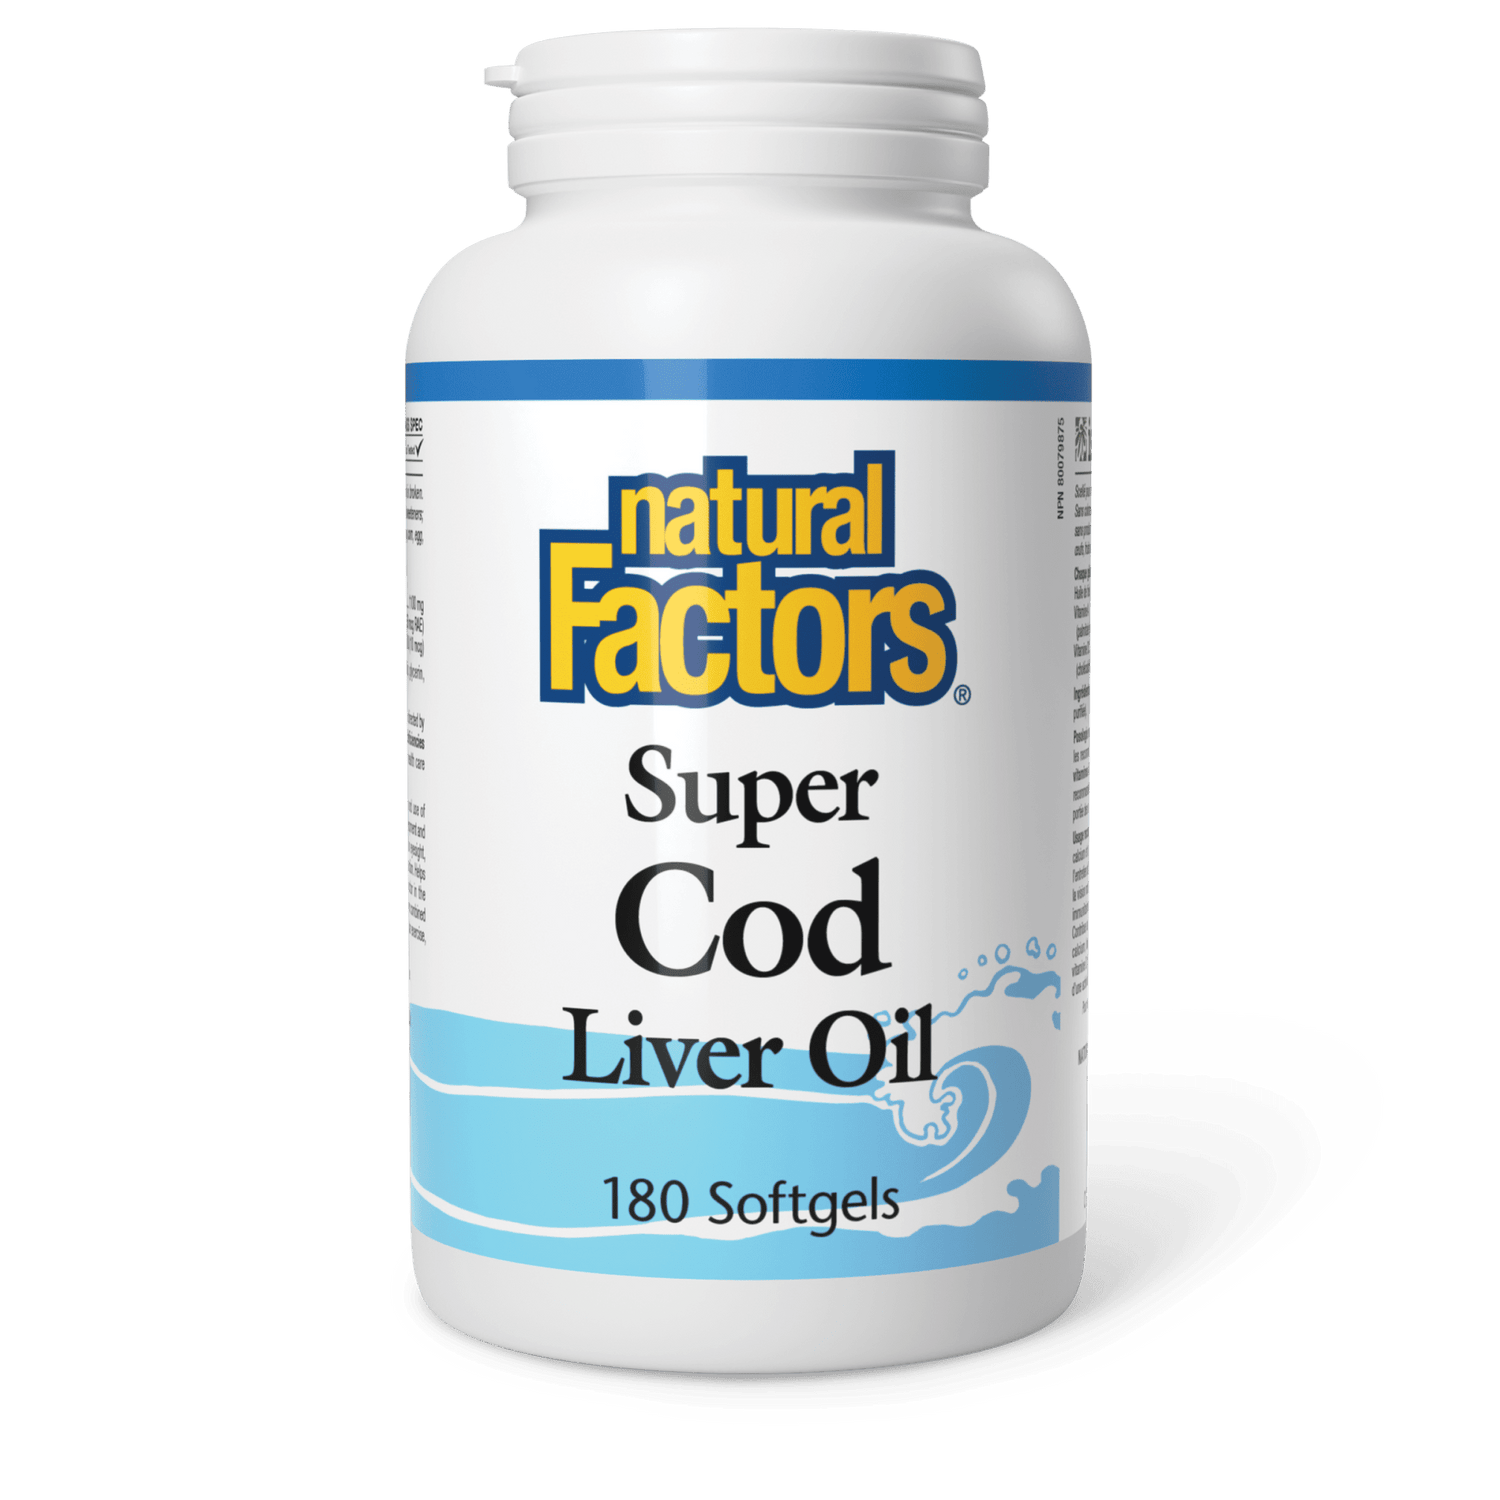 Super Cod Liver Oil, Natural Factors|v|image|1021